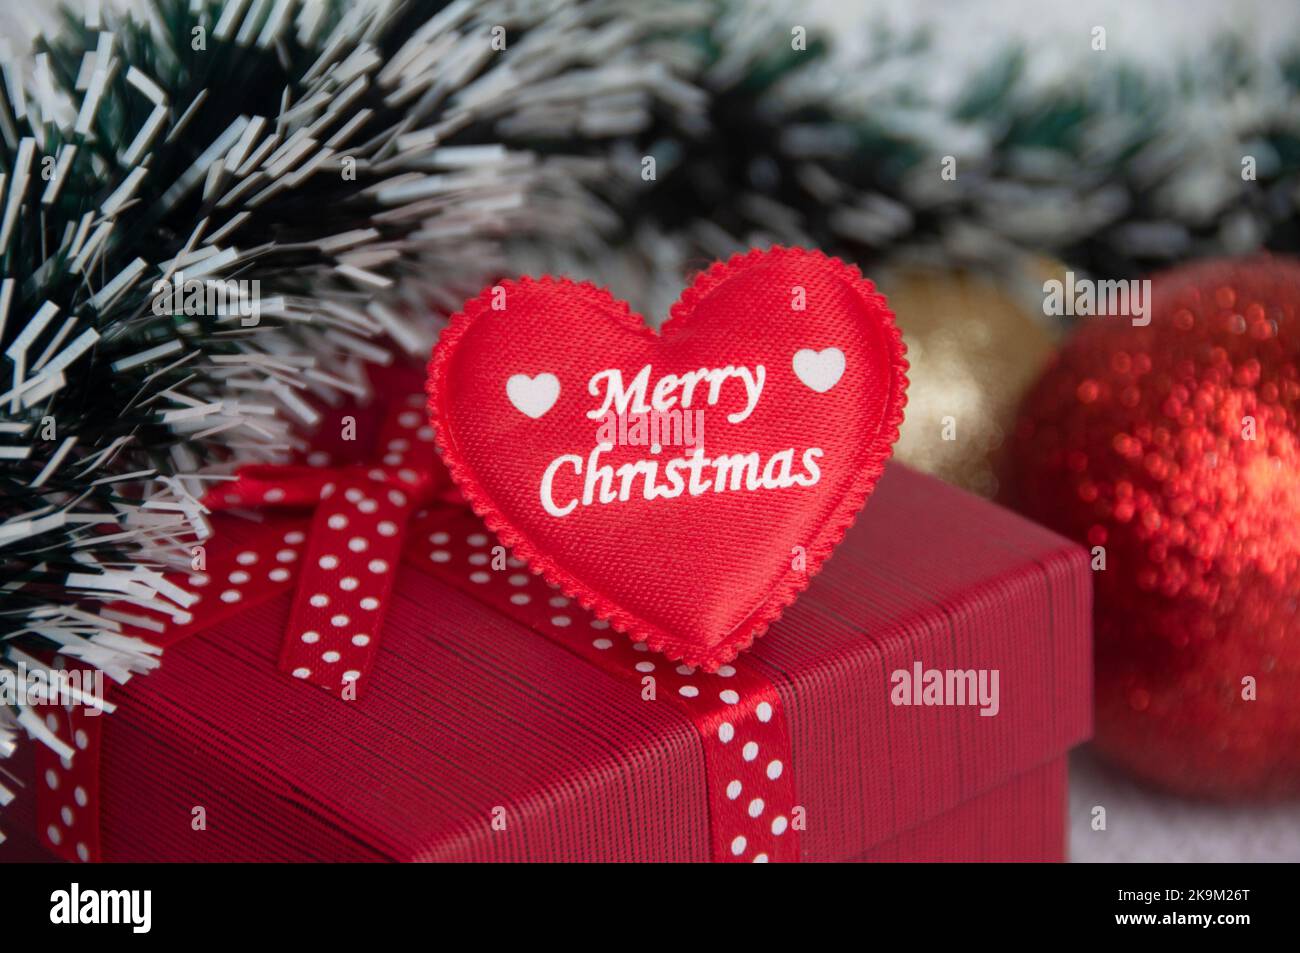 Frohe Weihnachten Text auf Herz-Form auf der Oberseite der roten Farbe Geschenk mit Weihnachtsdekoration Hintergrund. Weihnachtsgeschenk und Festungskonzept. Stockfoto